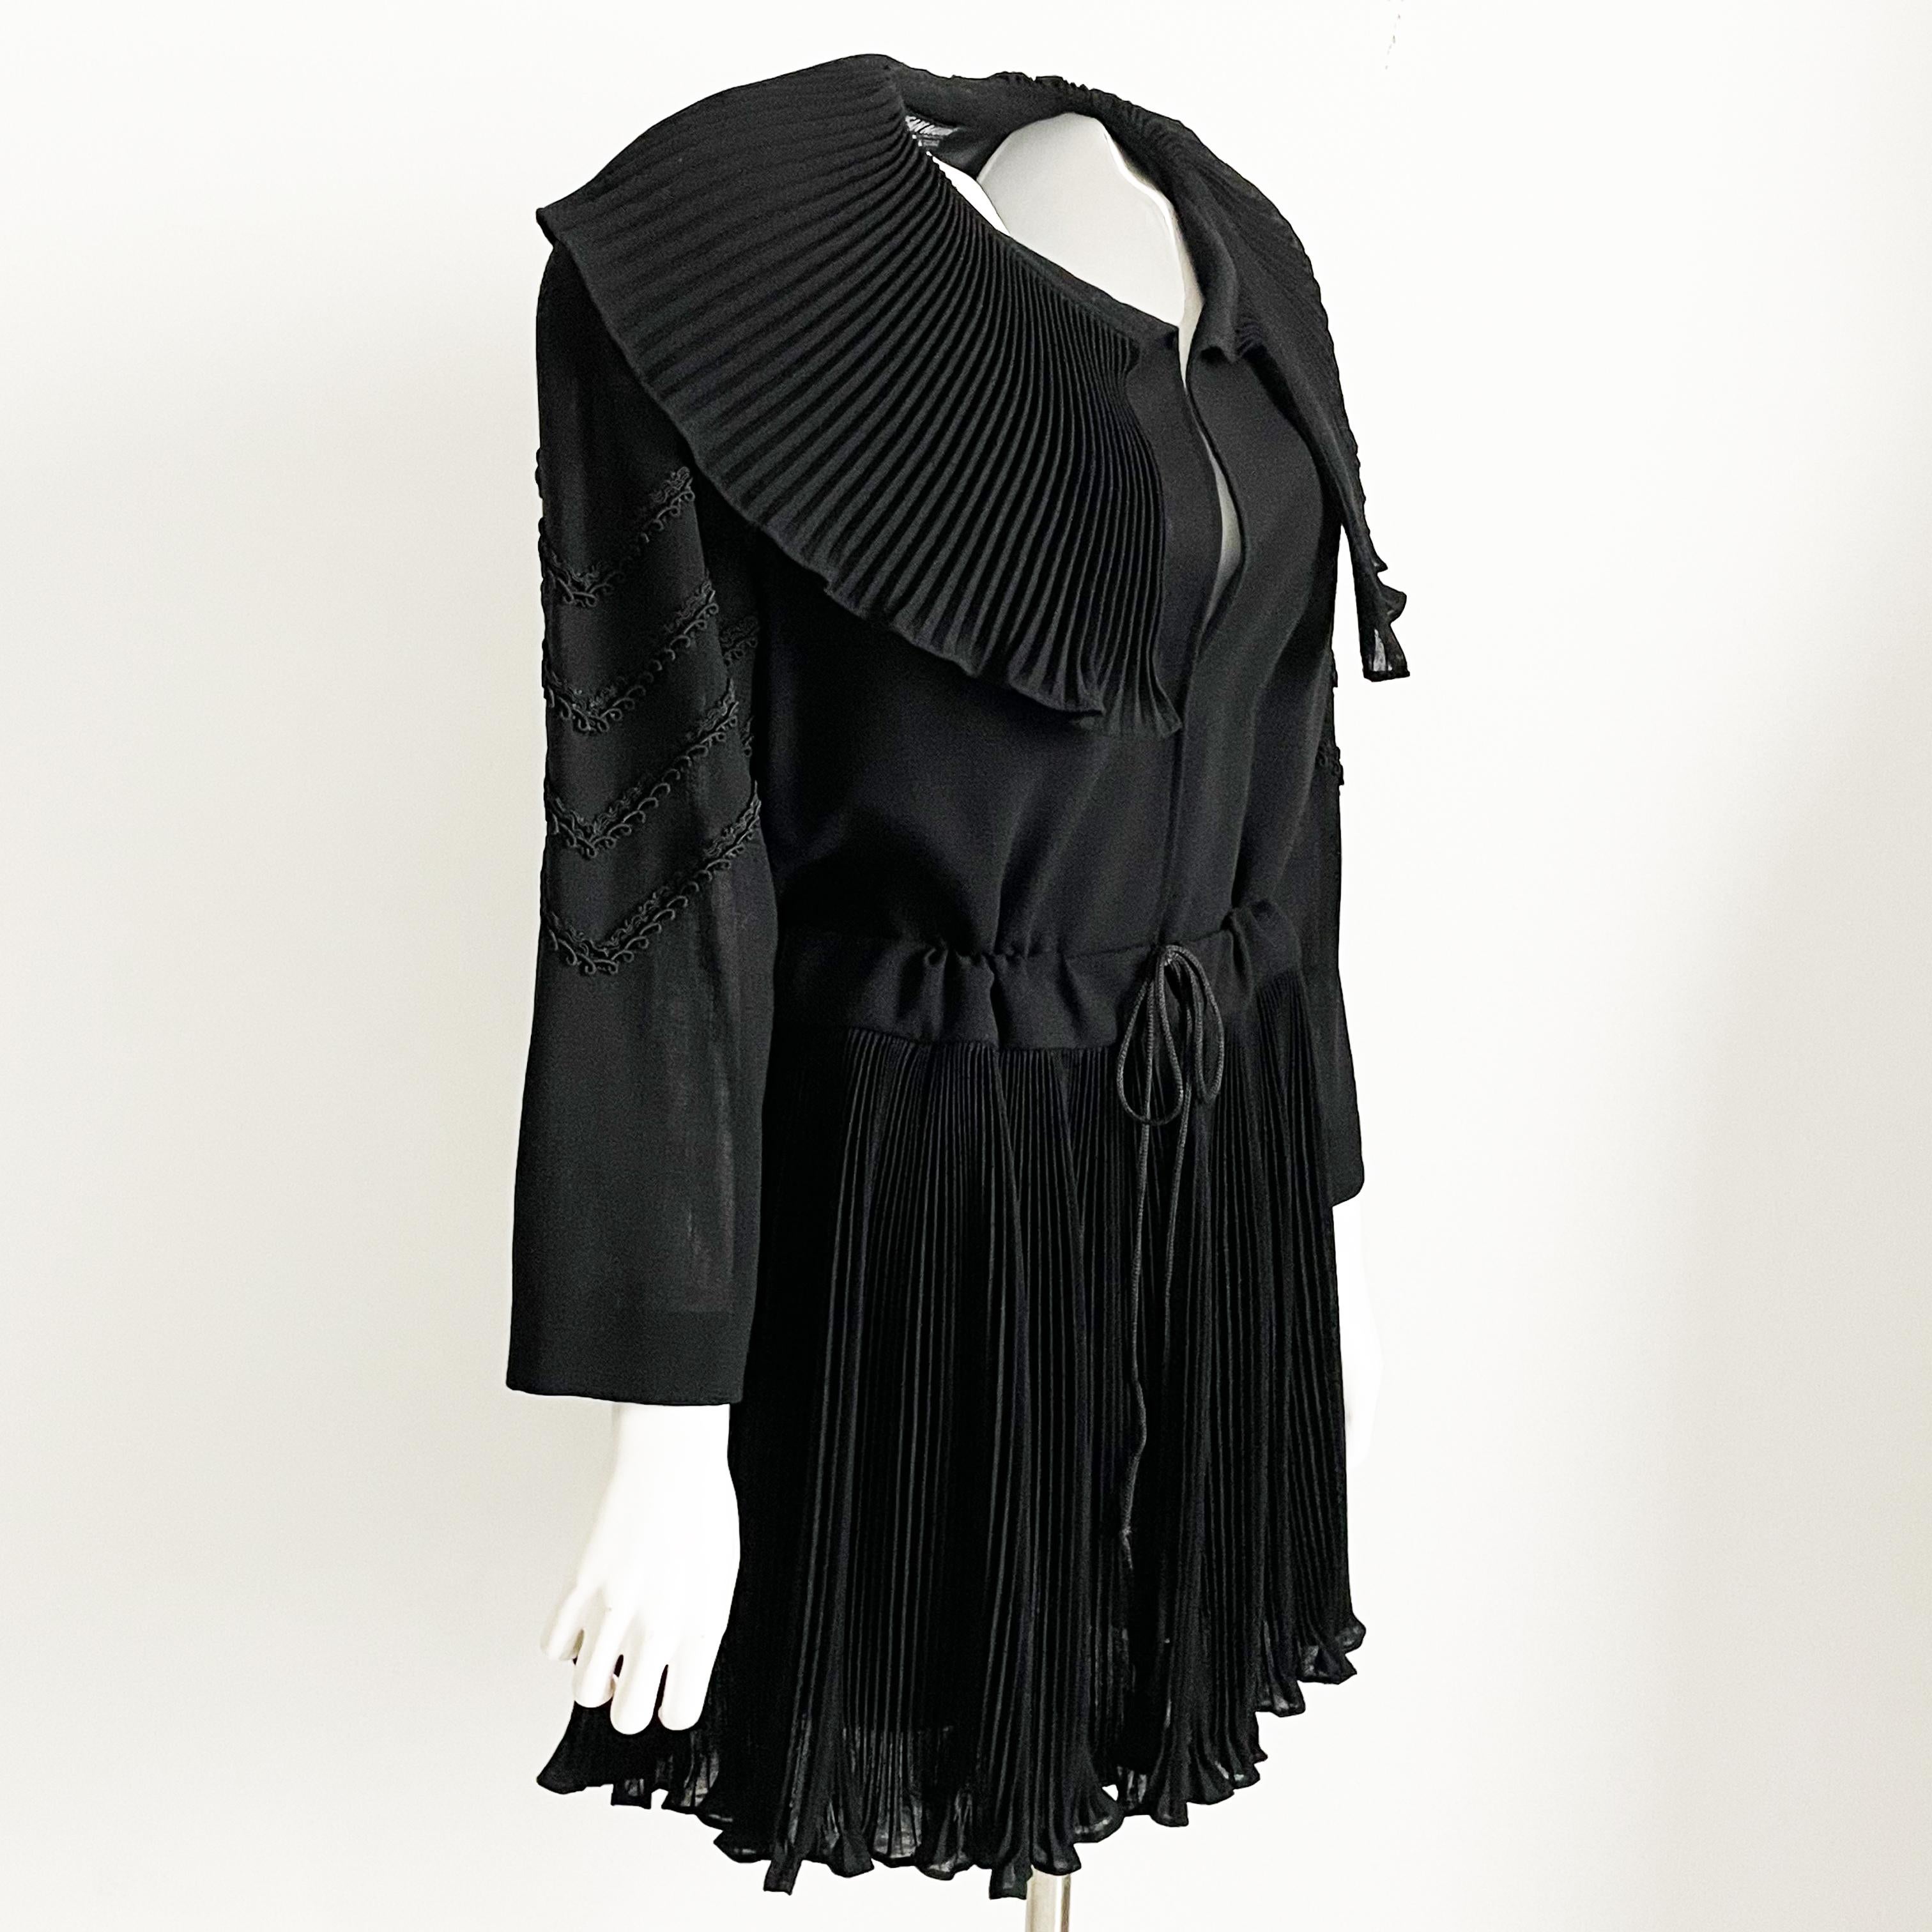 Authentique, d'occasion, vintage Jean Muir veste en laine noire avec col à micro plis, probablement fabriquée dans les années 80. Romantique et sophistiquée, elle est dotée d'un col et d'un ourlet en micro-plis et de détails en soutache sur les